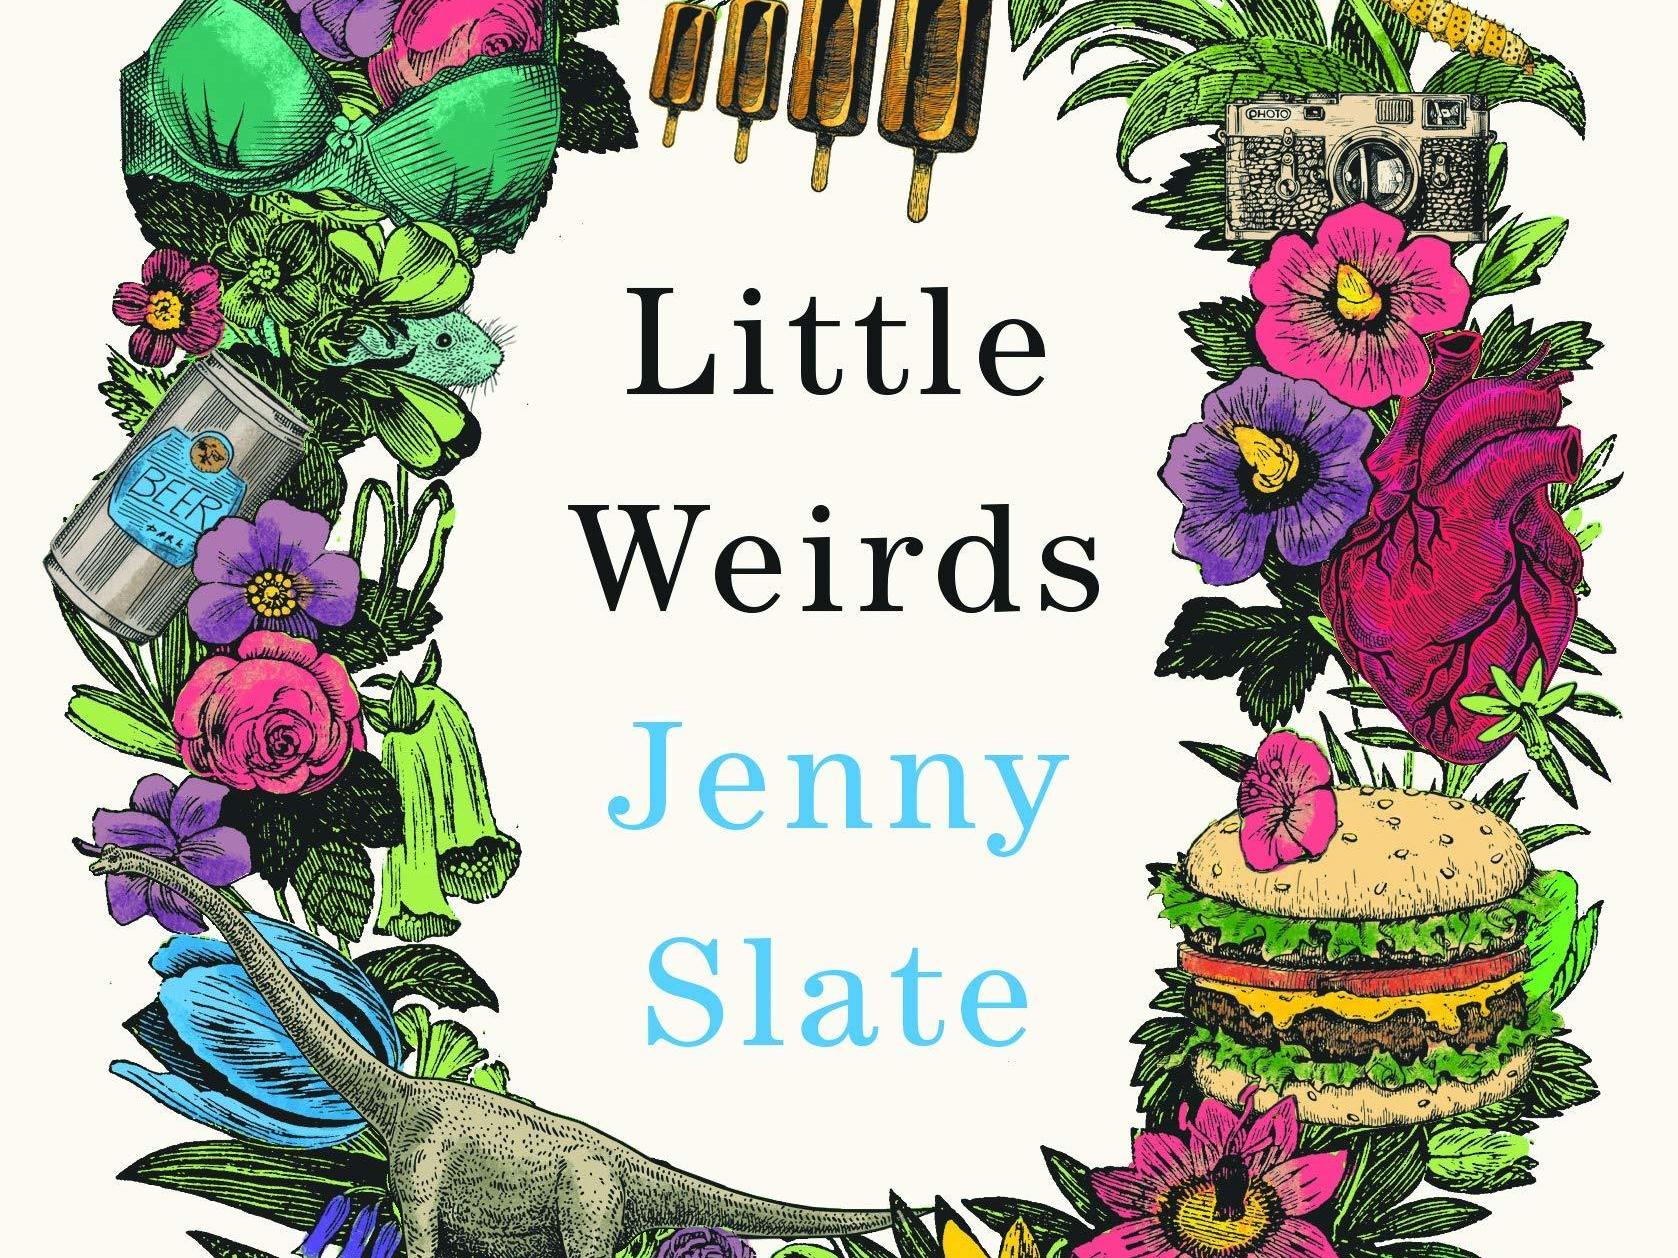 Jenny Slate's Little Weirds